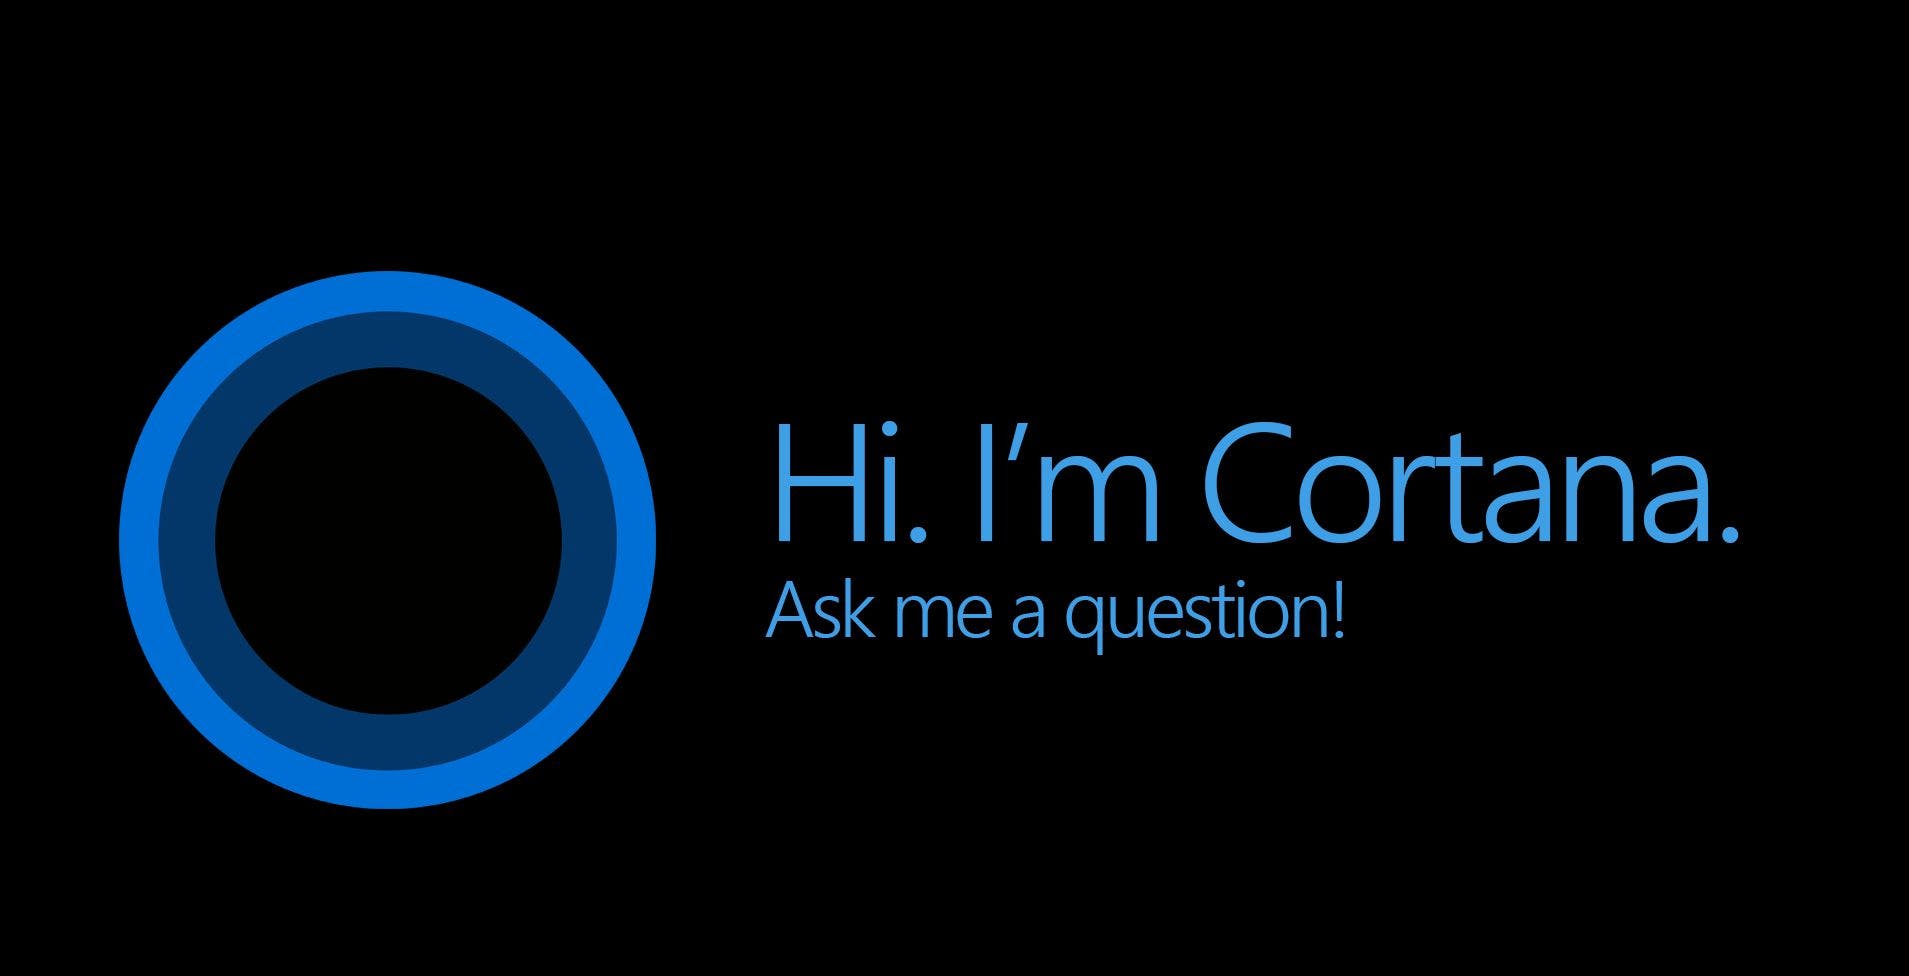 Cortana media 1